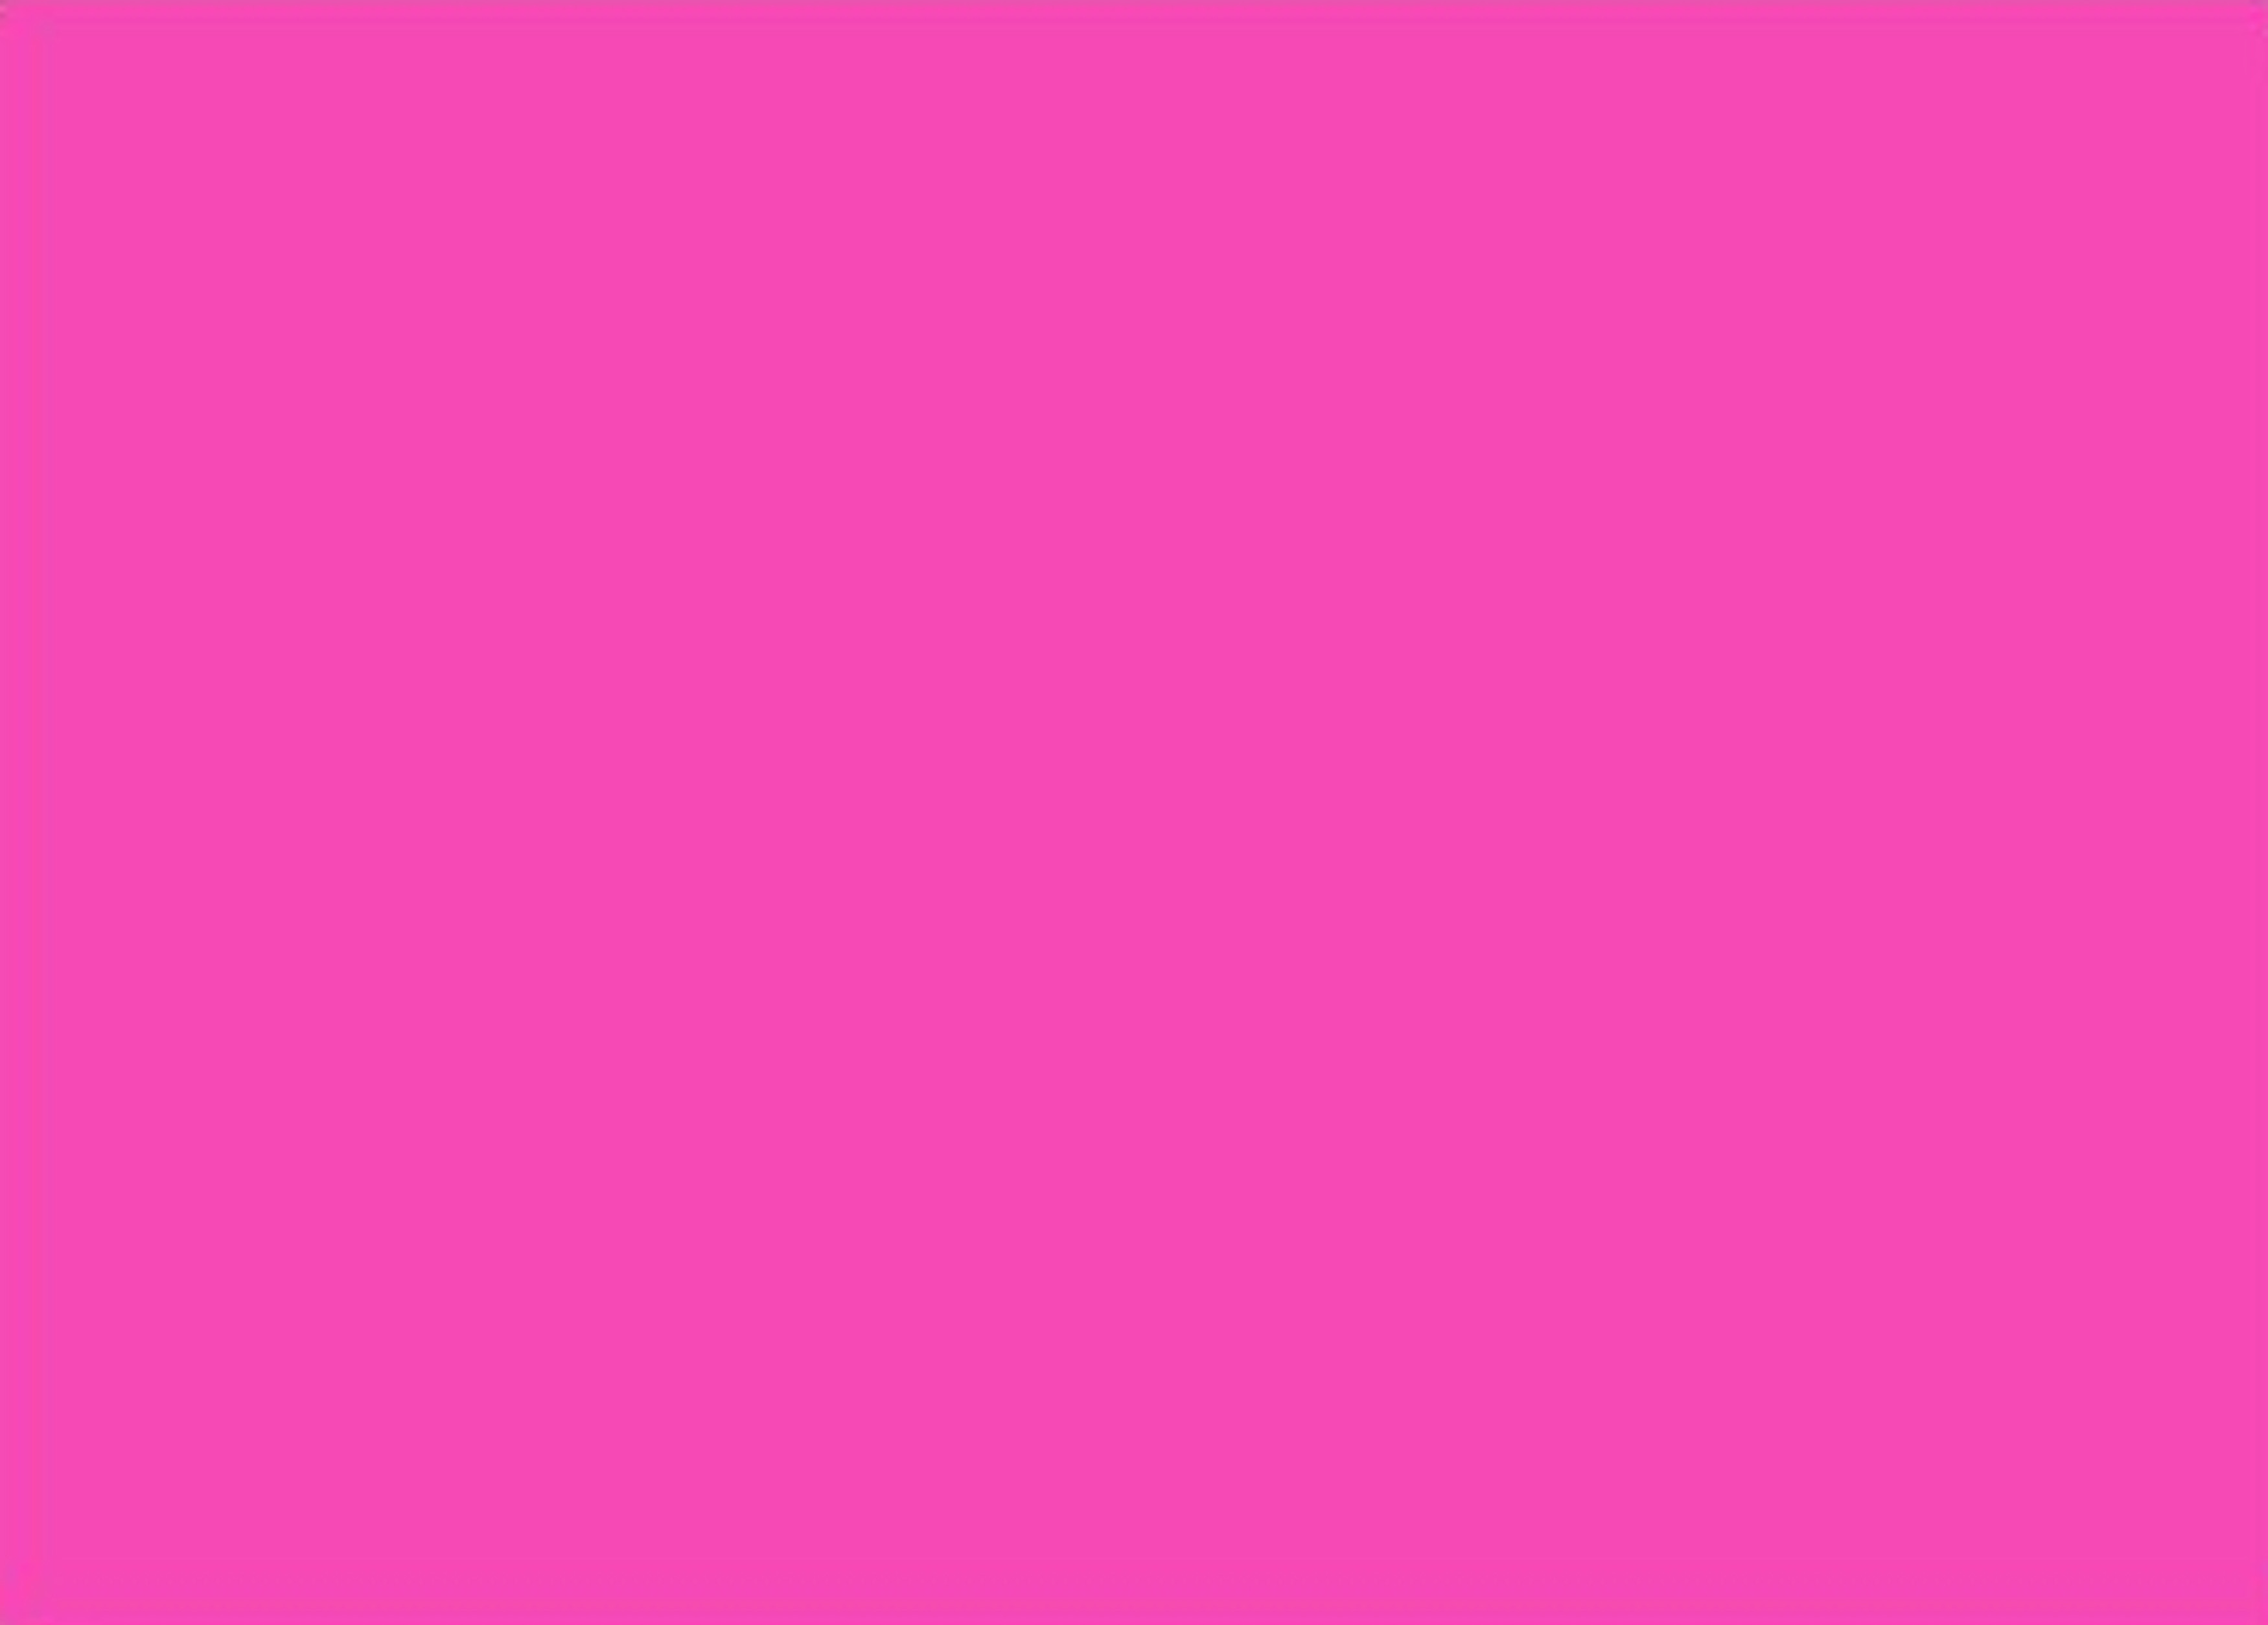 Mẫu hình nền màu hồng đơn giản không những mang lại sự tinh tế mà còn thể hiện phong cách thời trang của bạn. Với một màu sắc đầy nữ tính, nền trắng sáng, hình nền màu hồng đơn giản sẽ giúp chiếc điện thoại của bạn nổi bật và hút mắt hơn bao giờ hết. Chọn ngay một mẫu hình nền yêu thích ngay hôm nay.